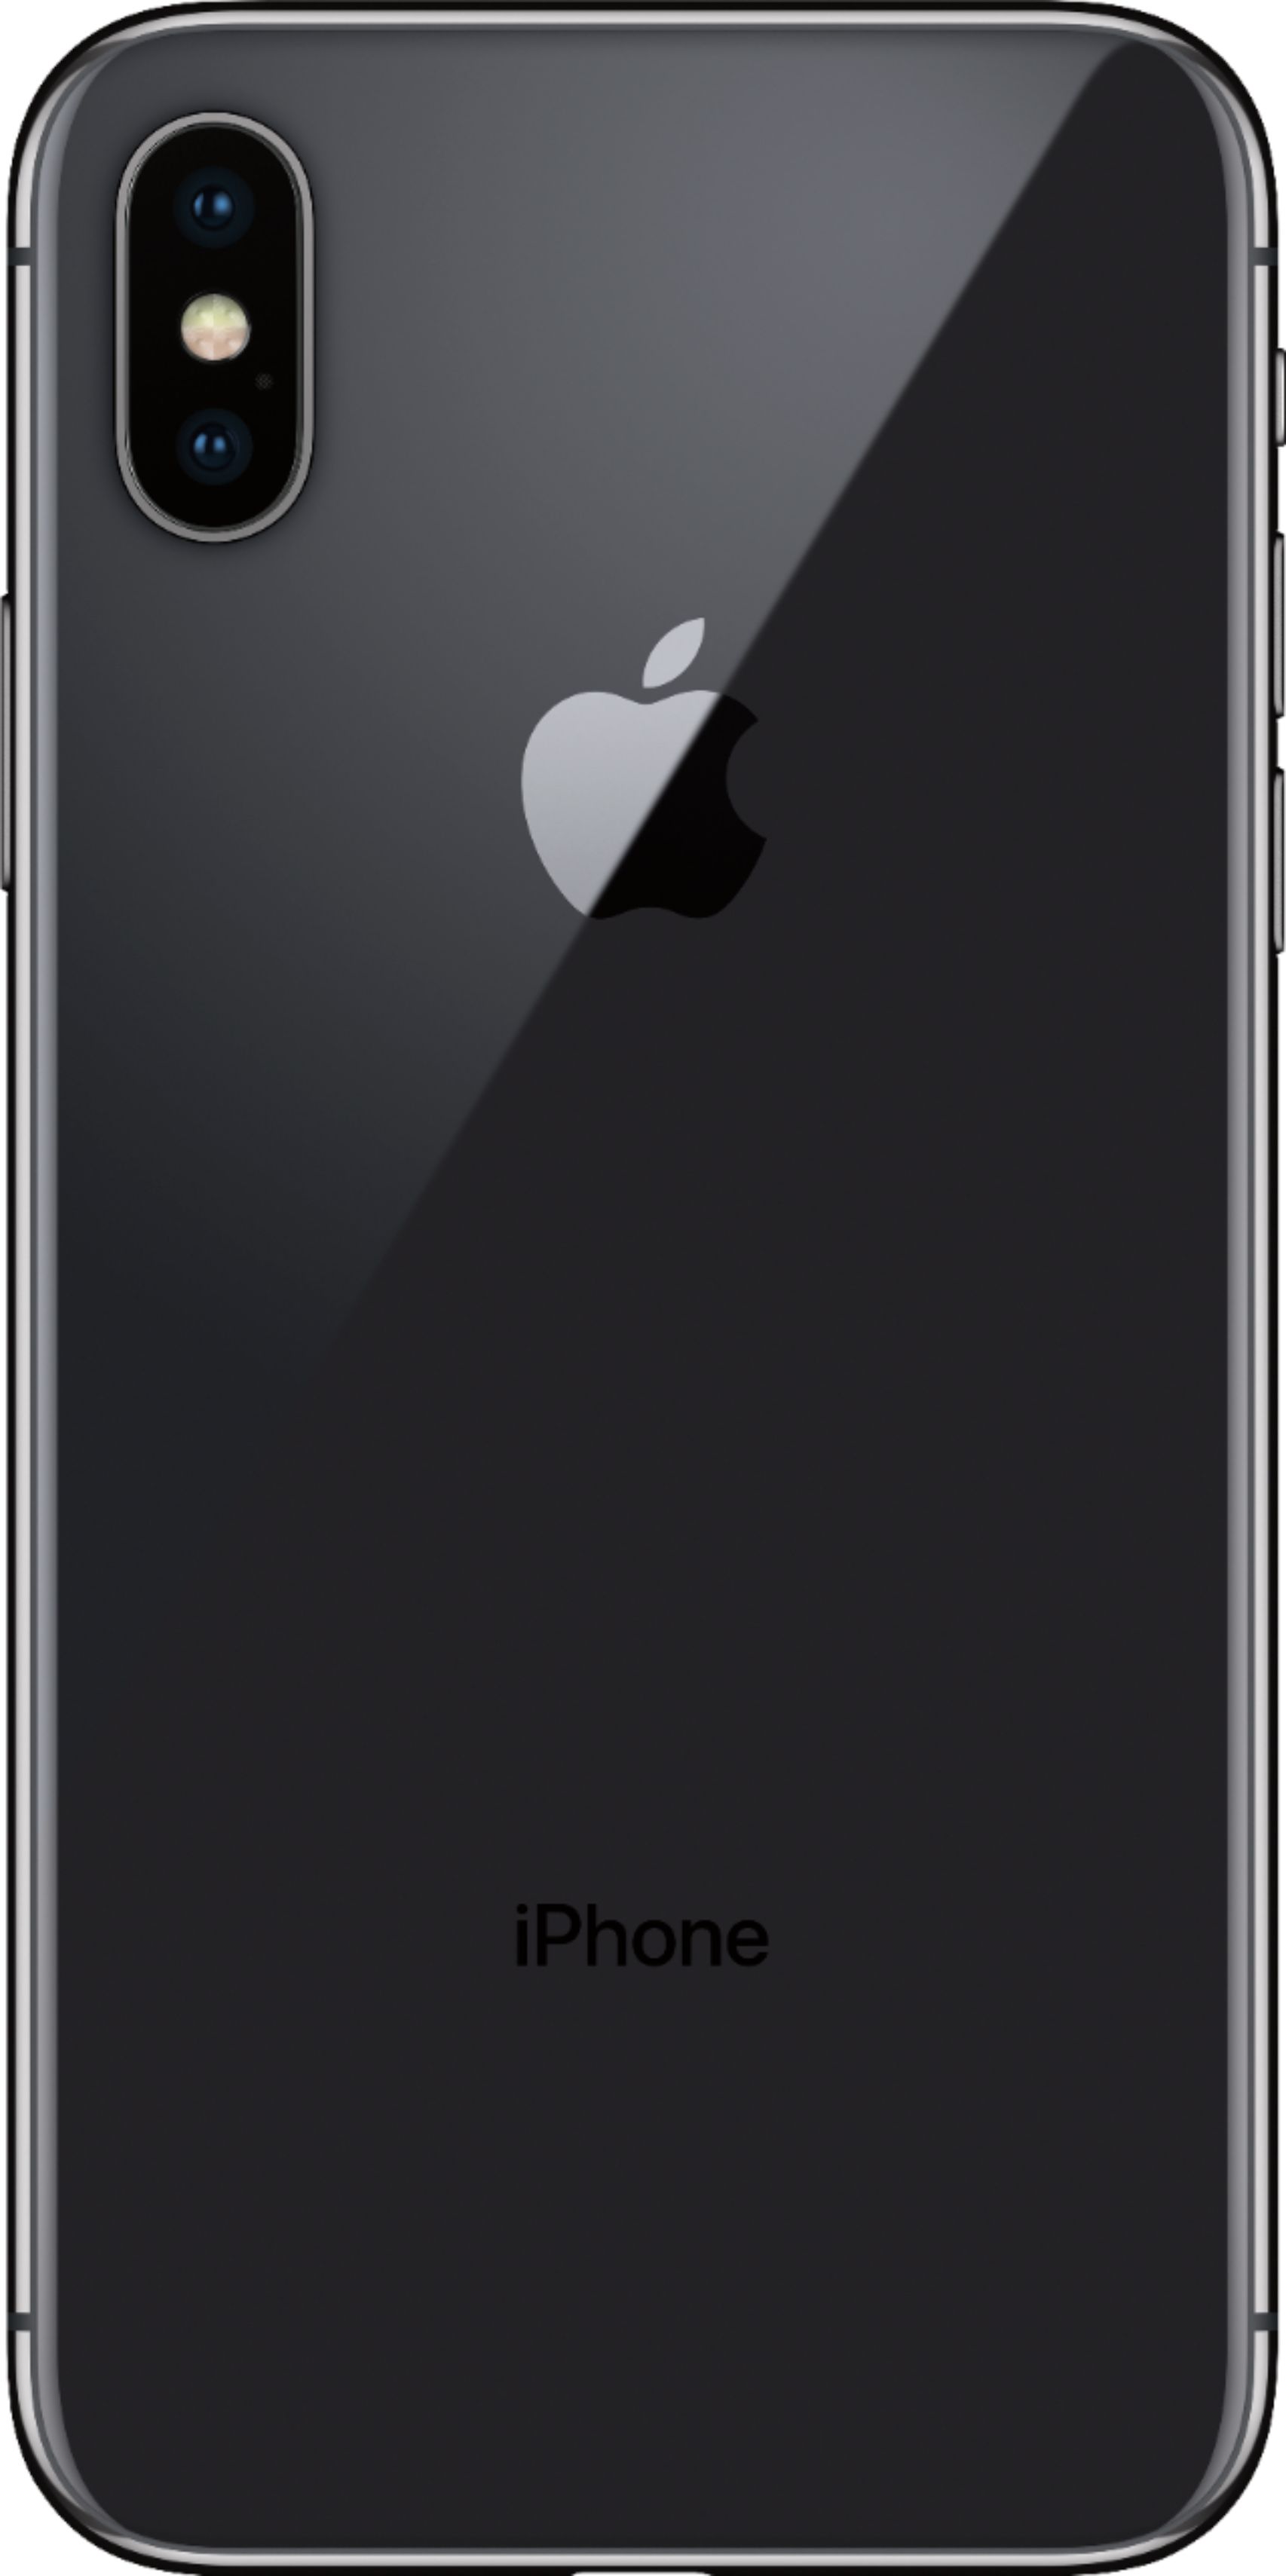 スマートフォン/携帯電話 スマートフォン本体 iPhone X Space Gray 64 GB au スマートフォン本体 スマートフォン 